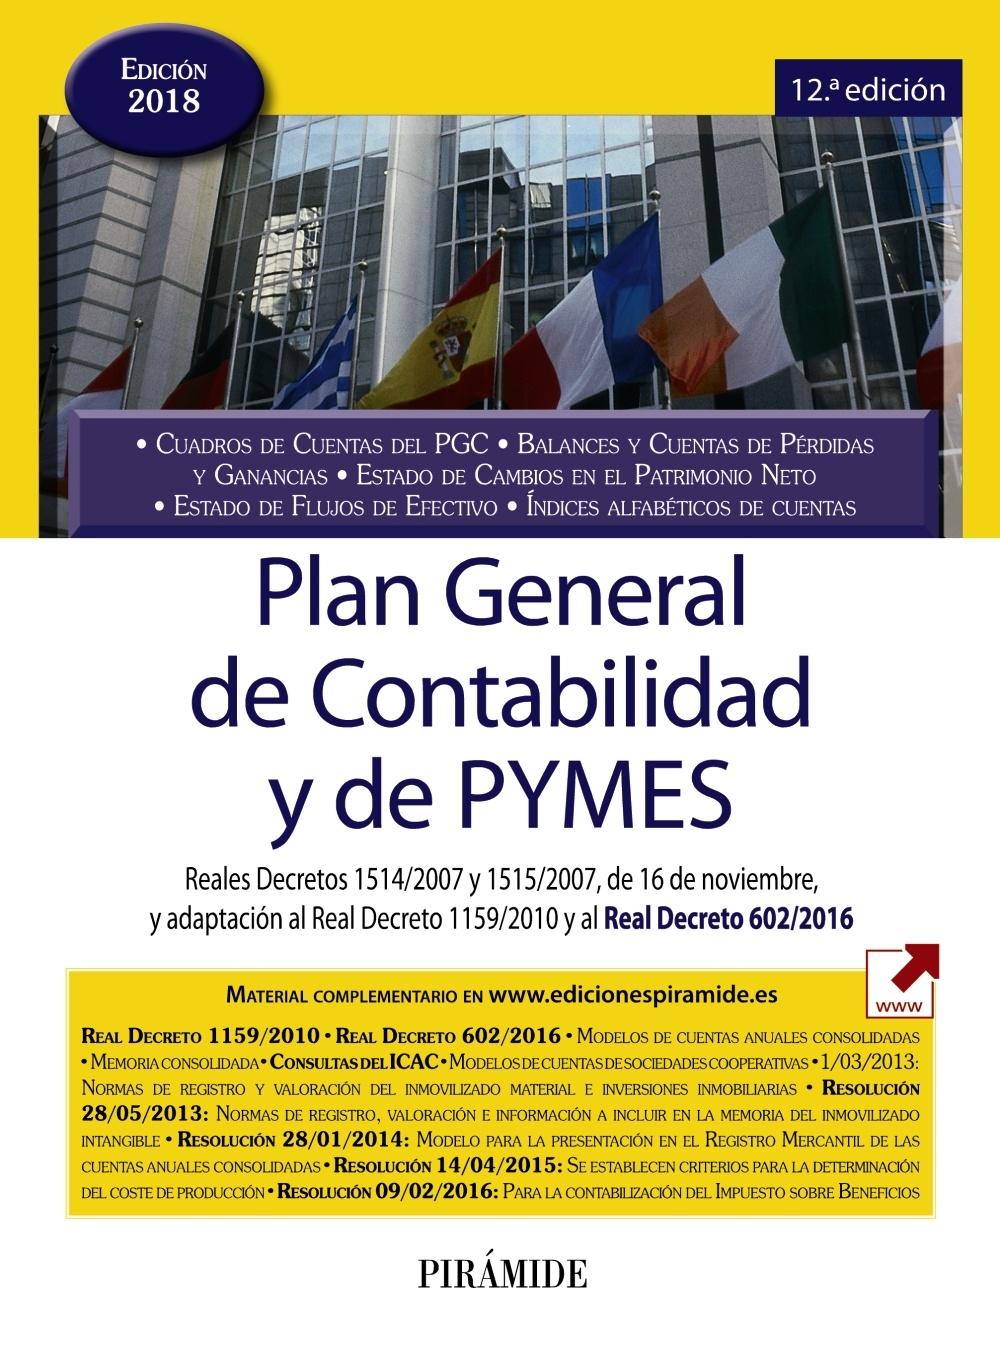 PLAN GENERAL DE CONTABILIDAD Y DE PYMES "Reales Decretos 1514/2007 y 1515/2007, de 16 de noviembre, y adaptación"